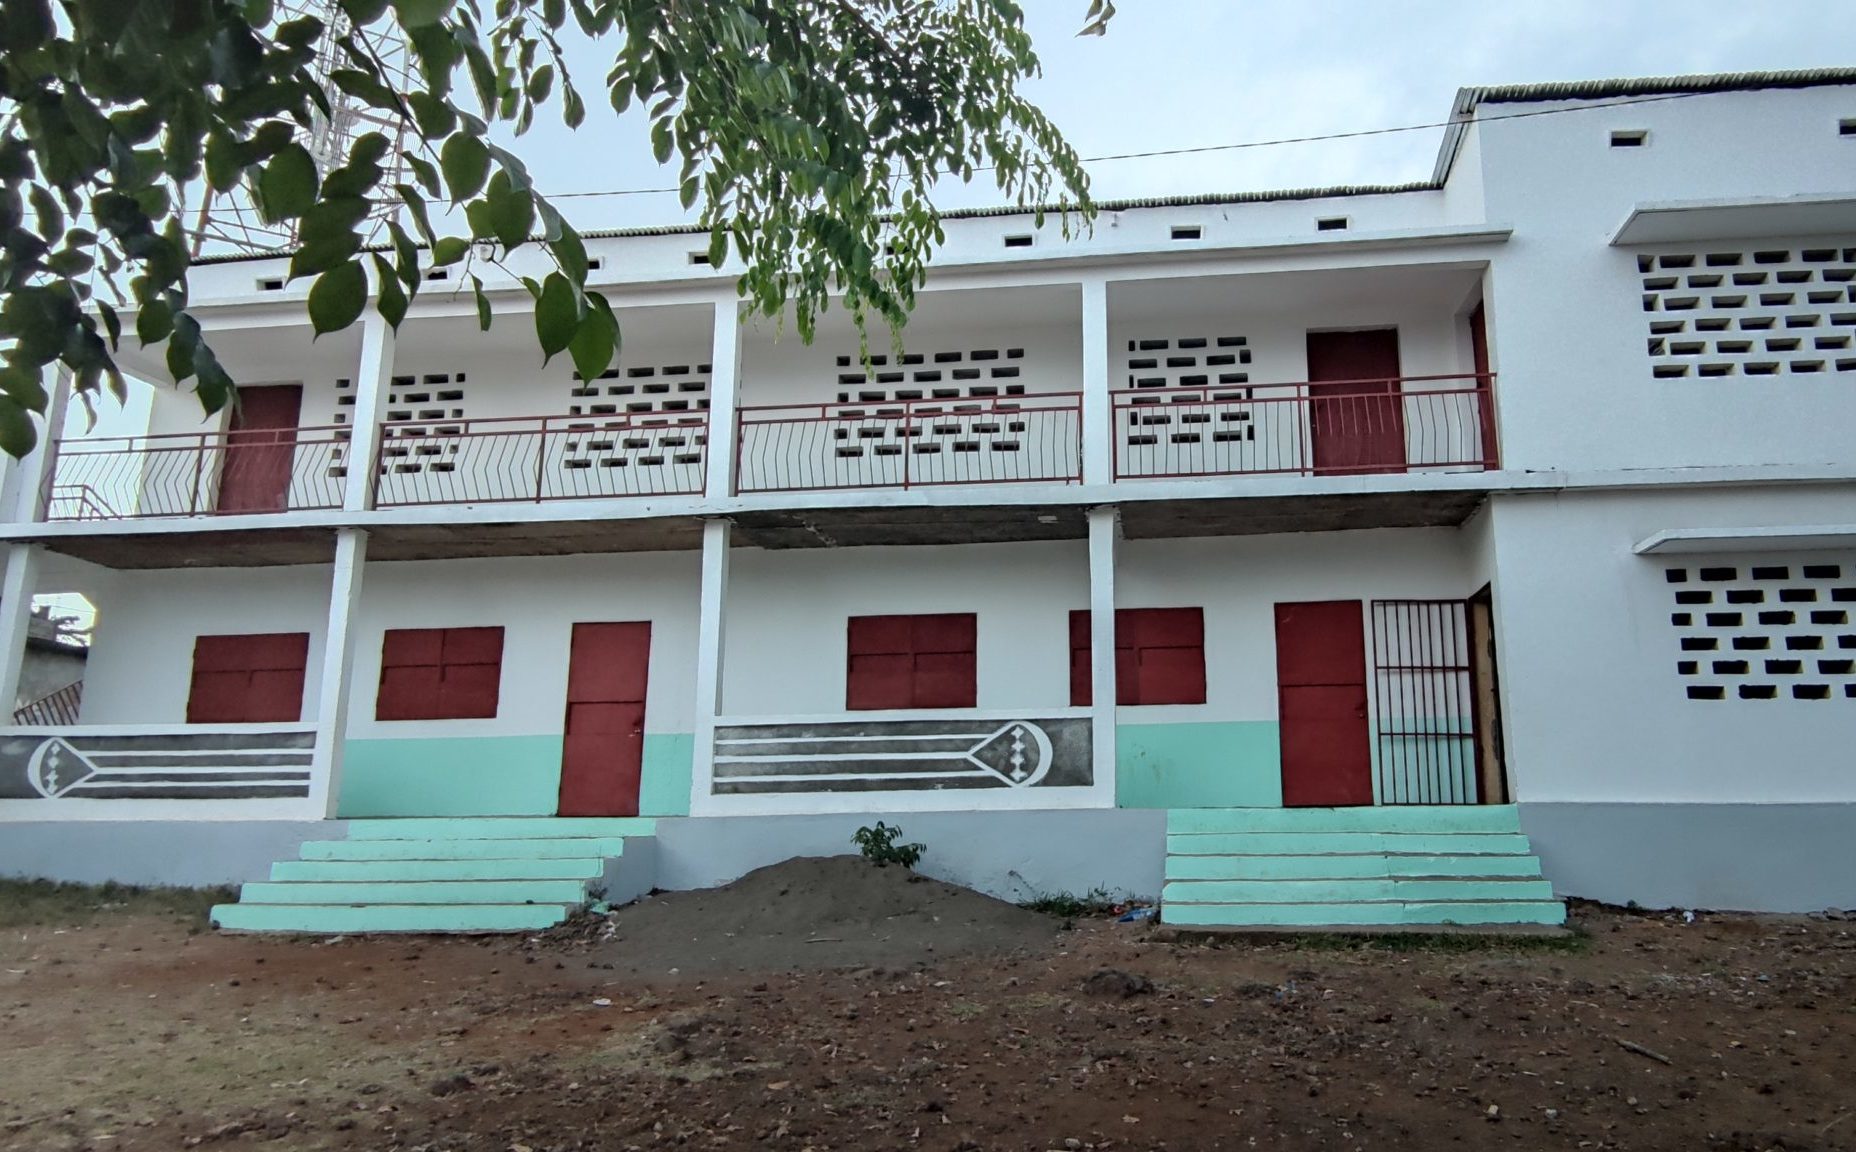 Ecole publique de Mbéni rénovée